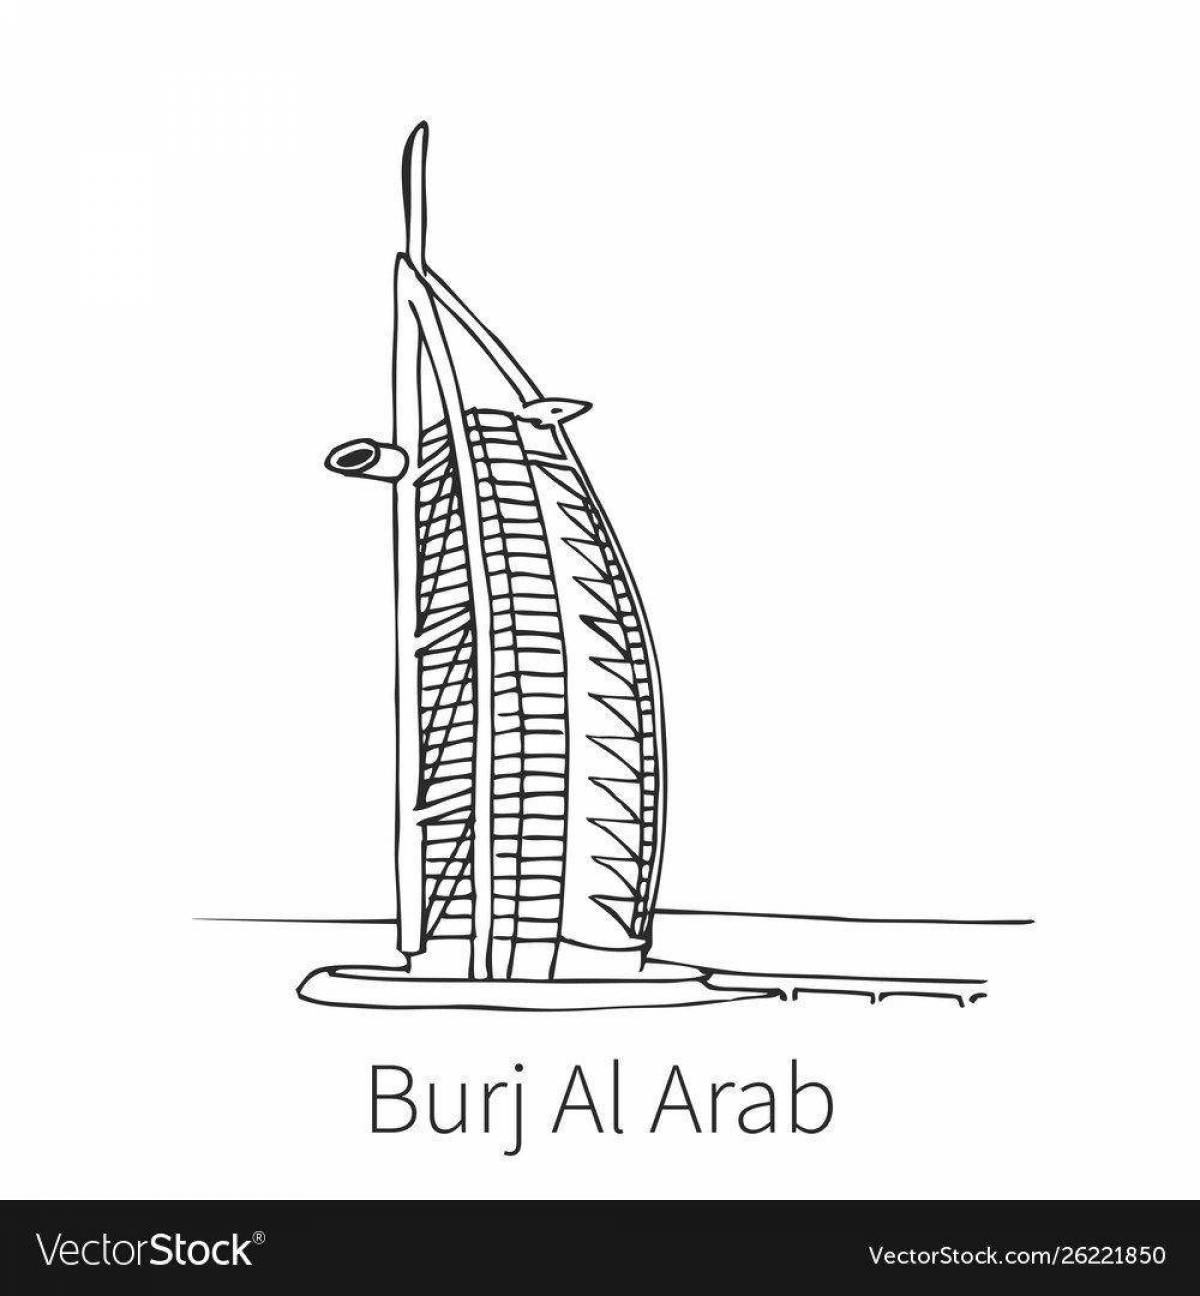 Dubai #9